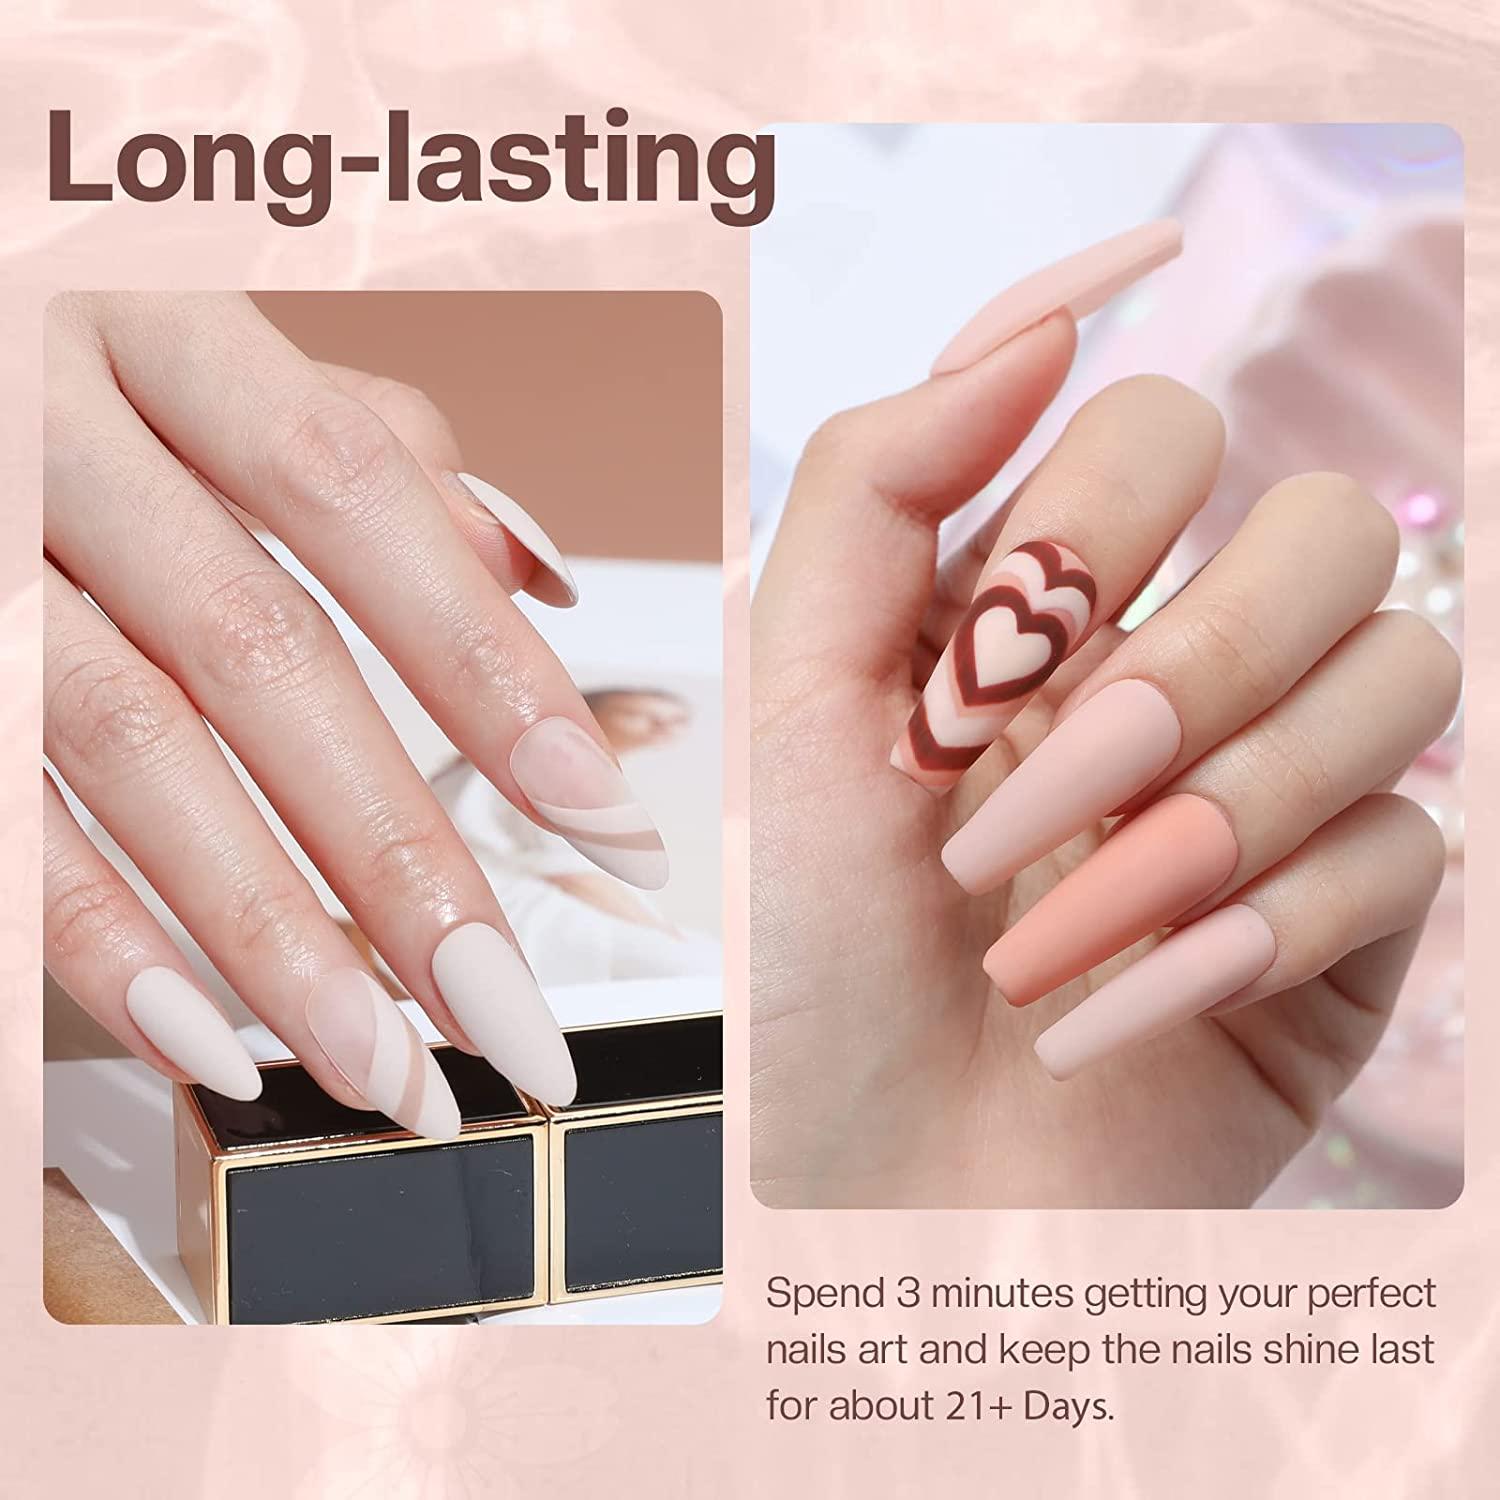 Dip powder nails almond shaped | Nails, Powder nails, Summery nails